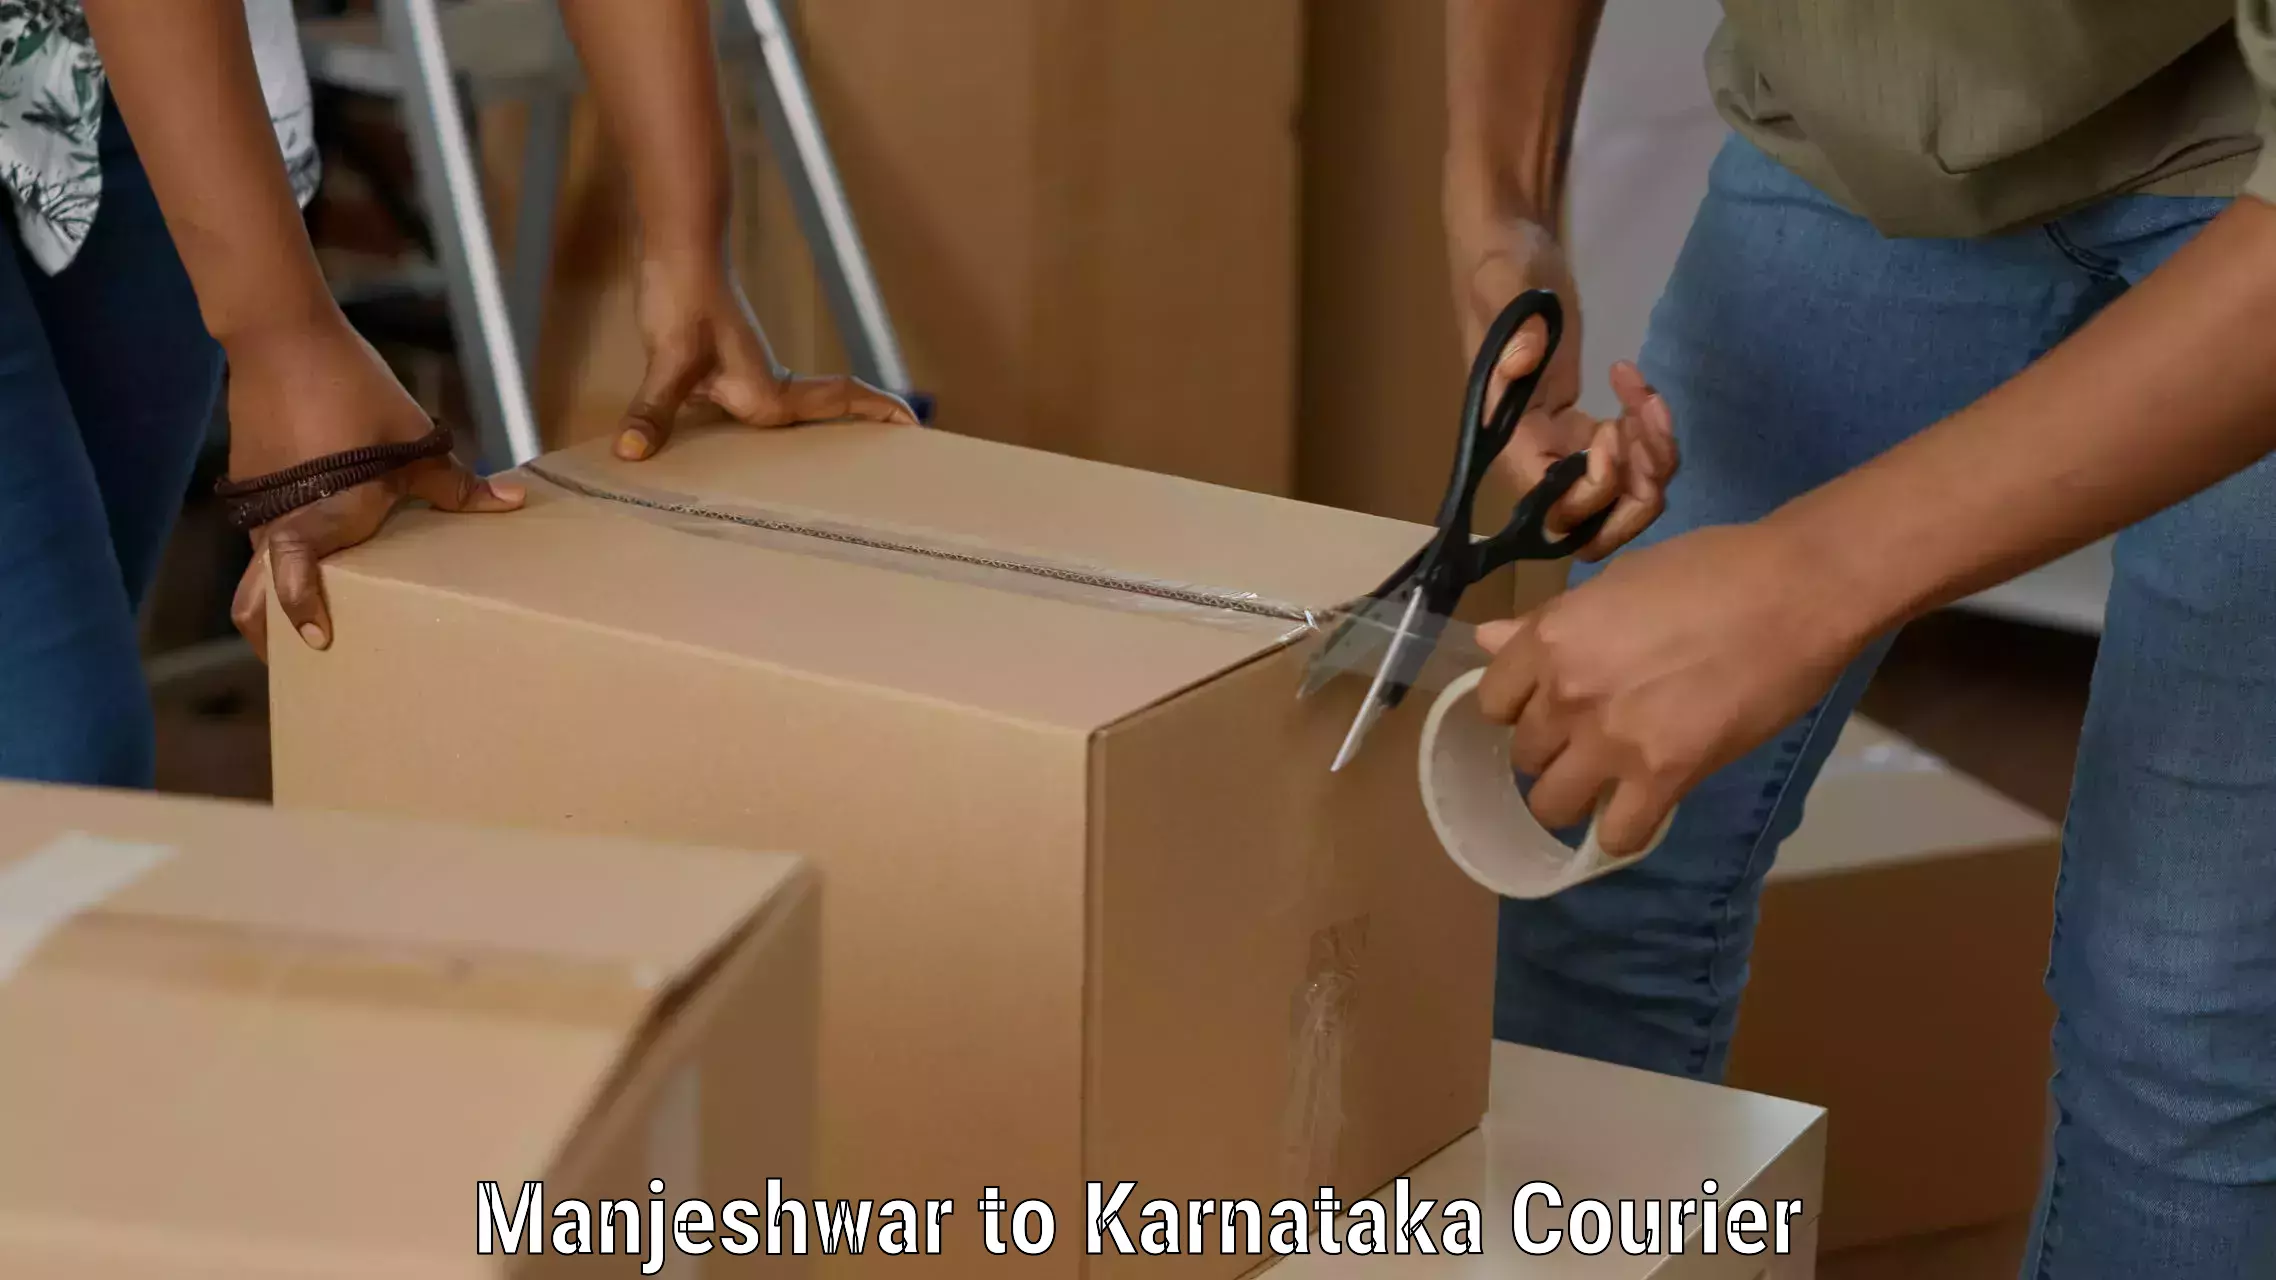 Customer-focused courier Manjeshwar to Karnataka